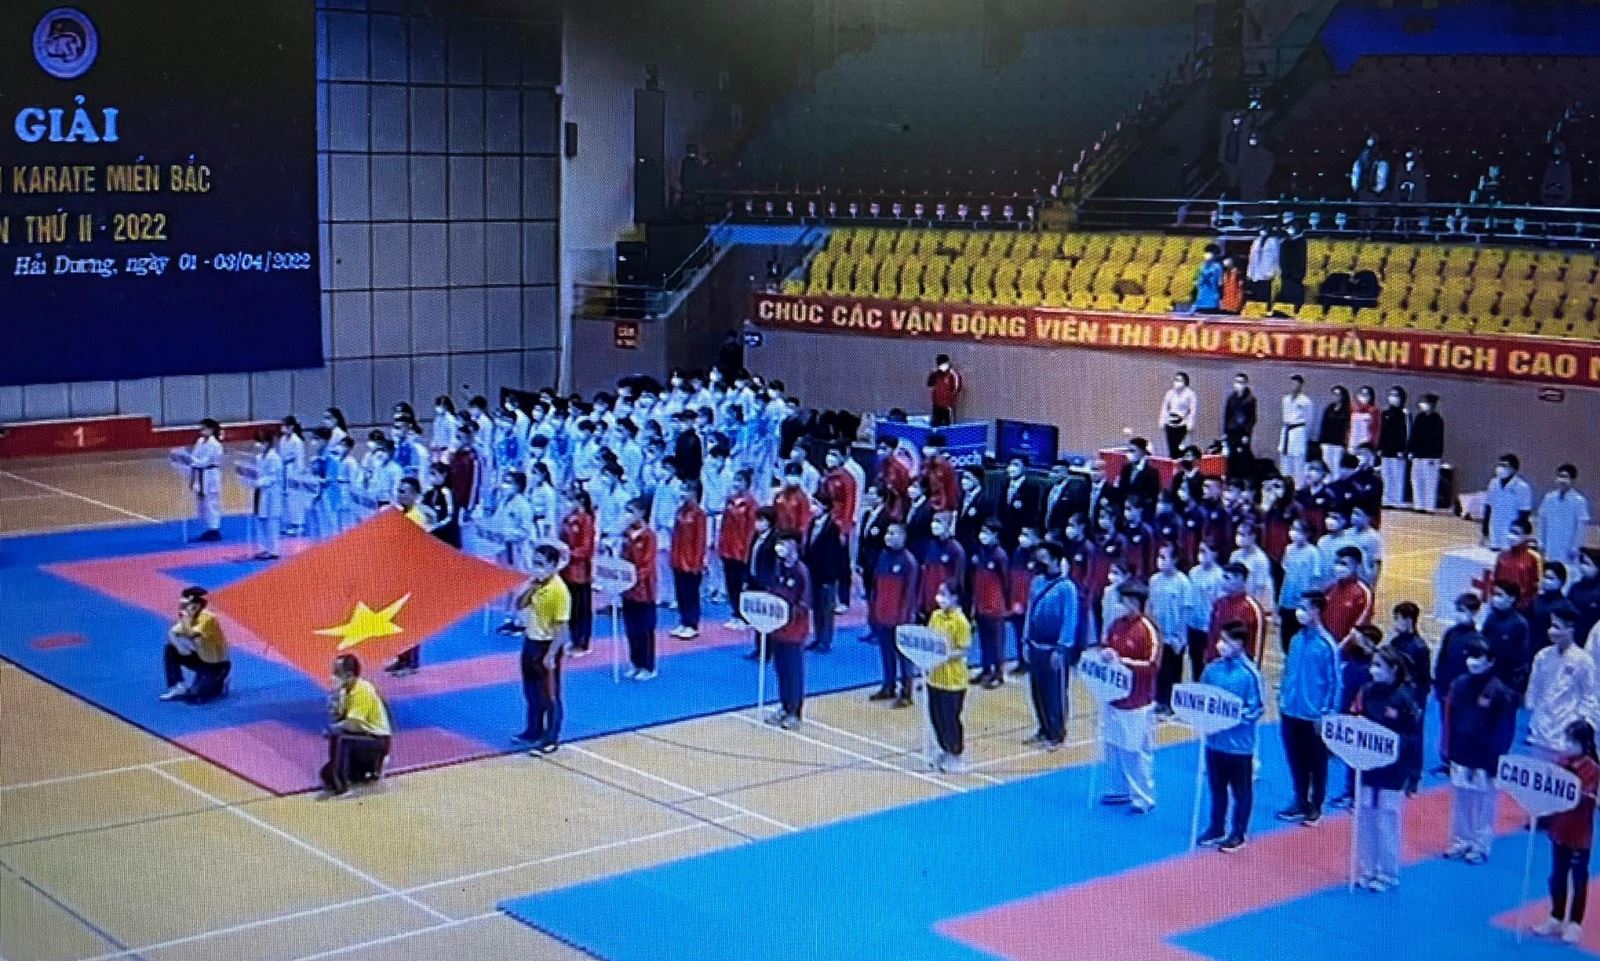 Khai mạc Giải vô địch karate miền Bắc lần thứ 2 năm 2022